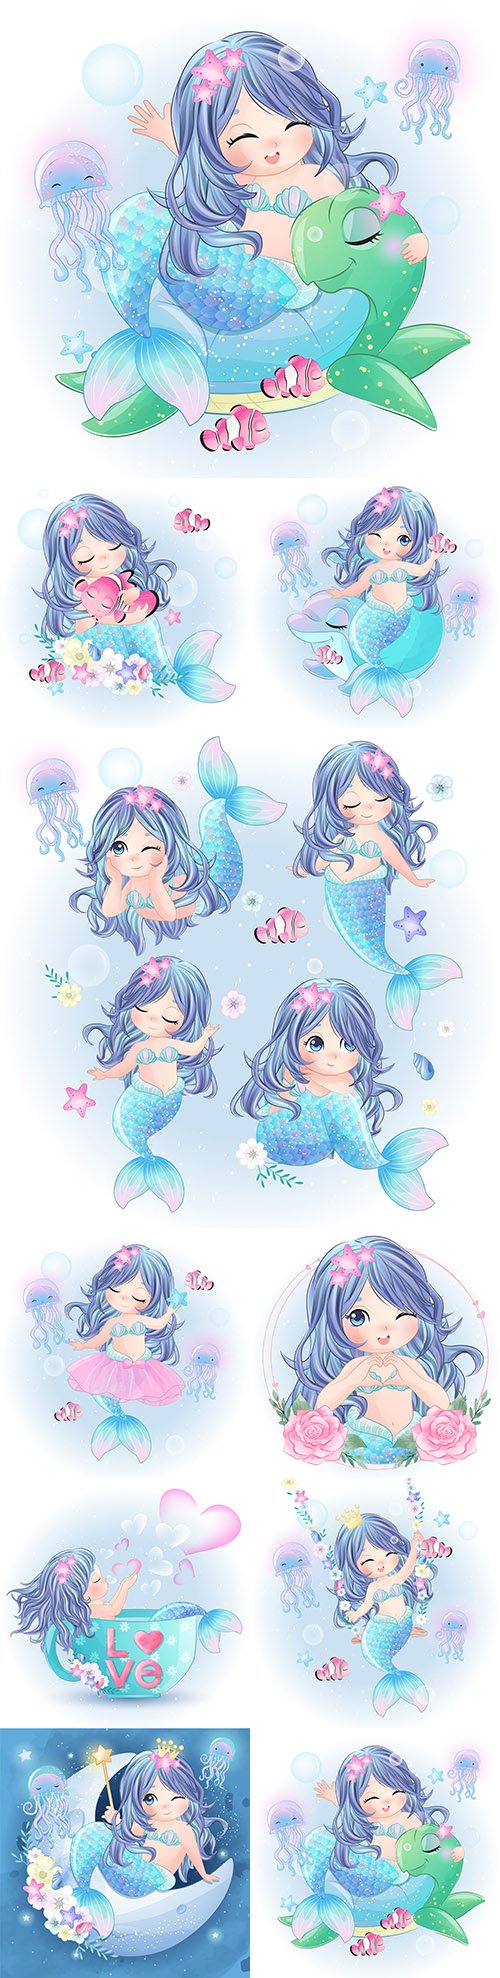 Sea mermaid drawn cute character beautiful illustration